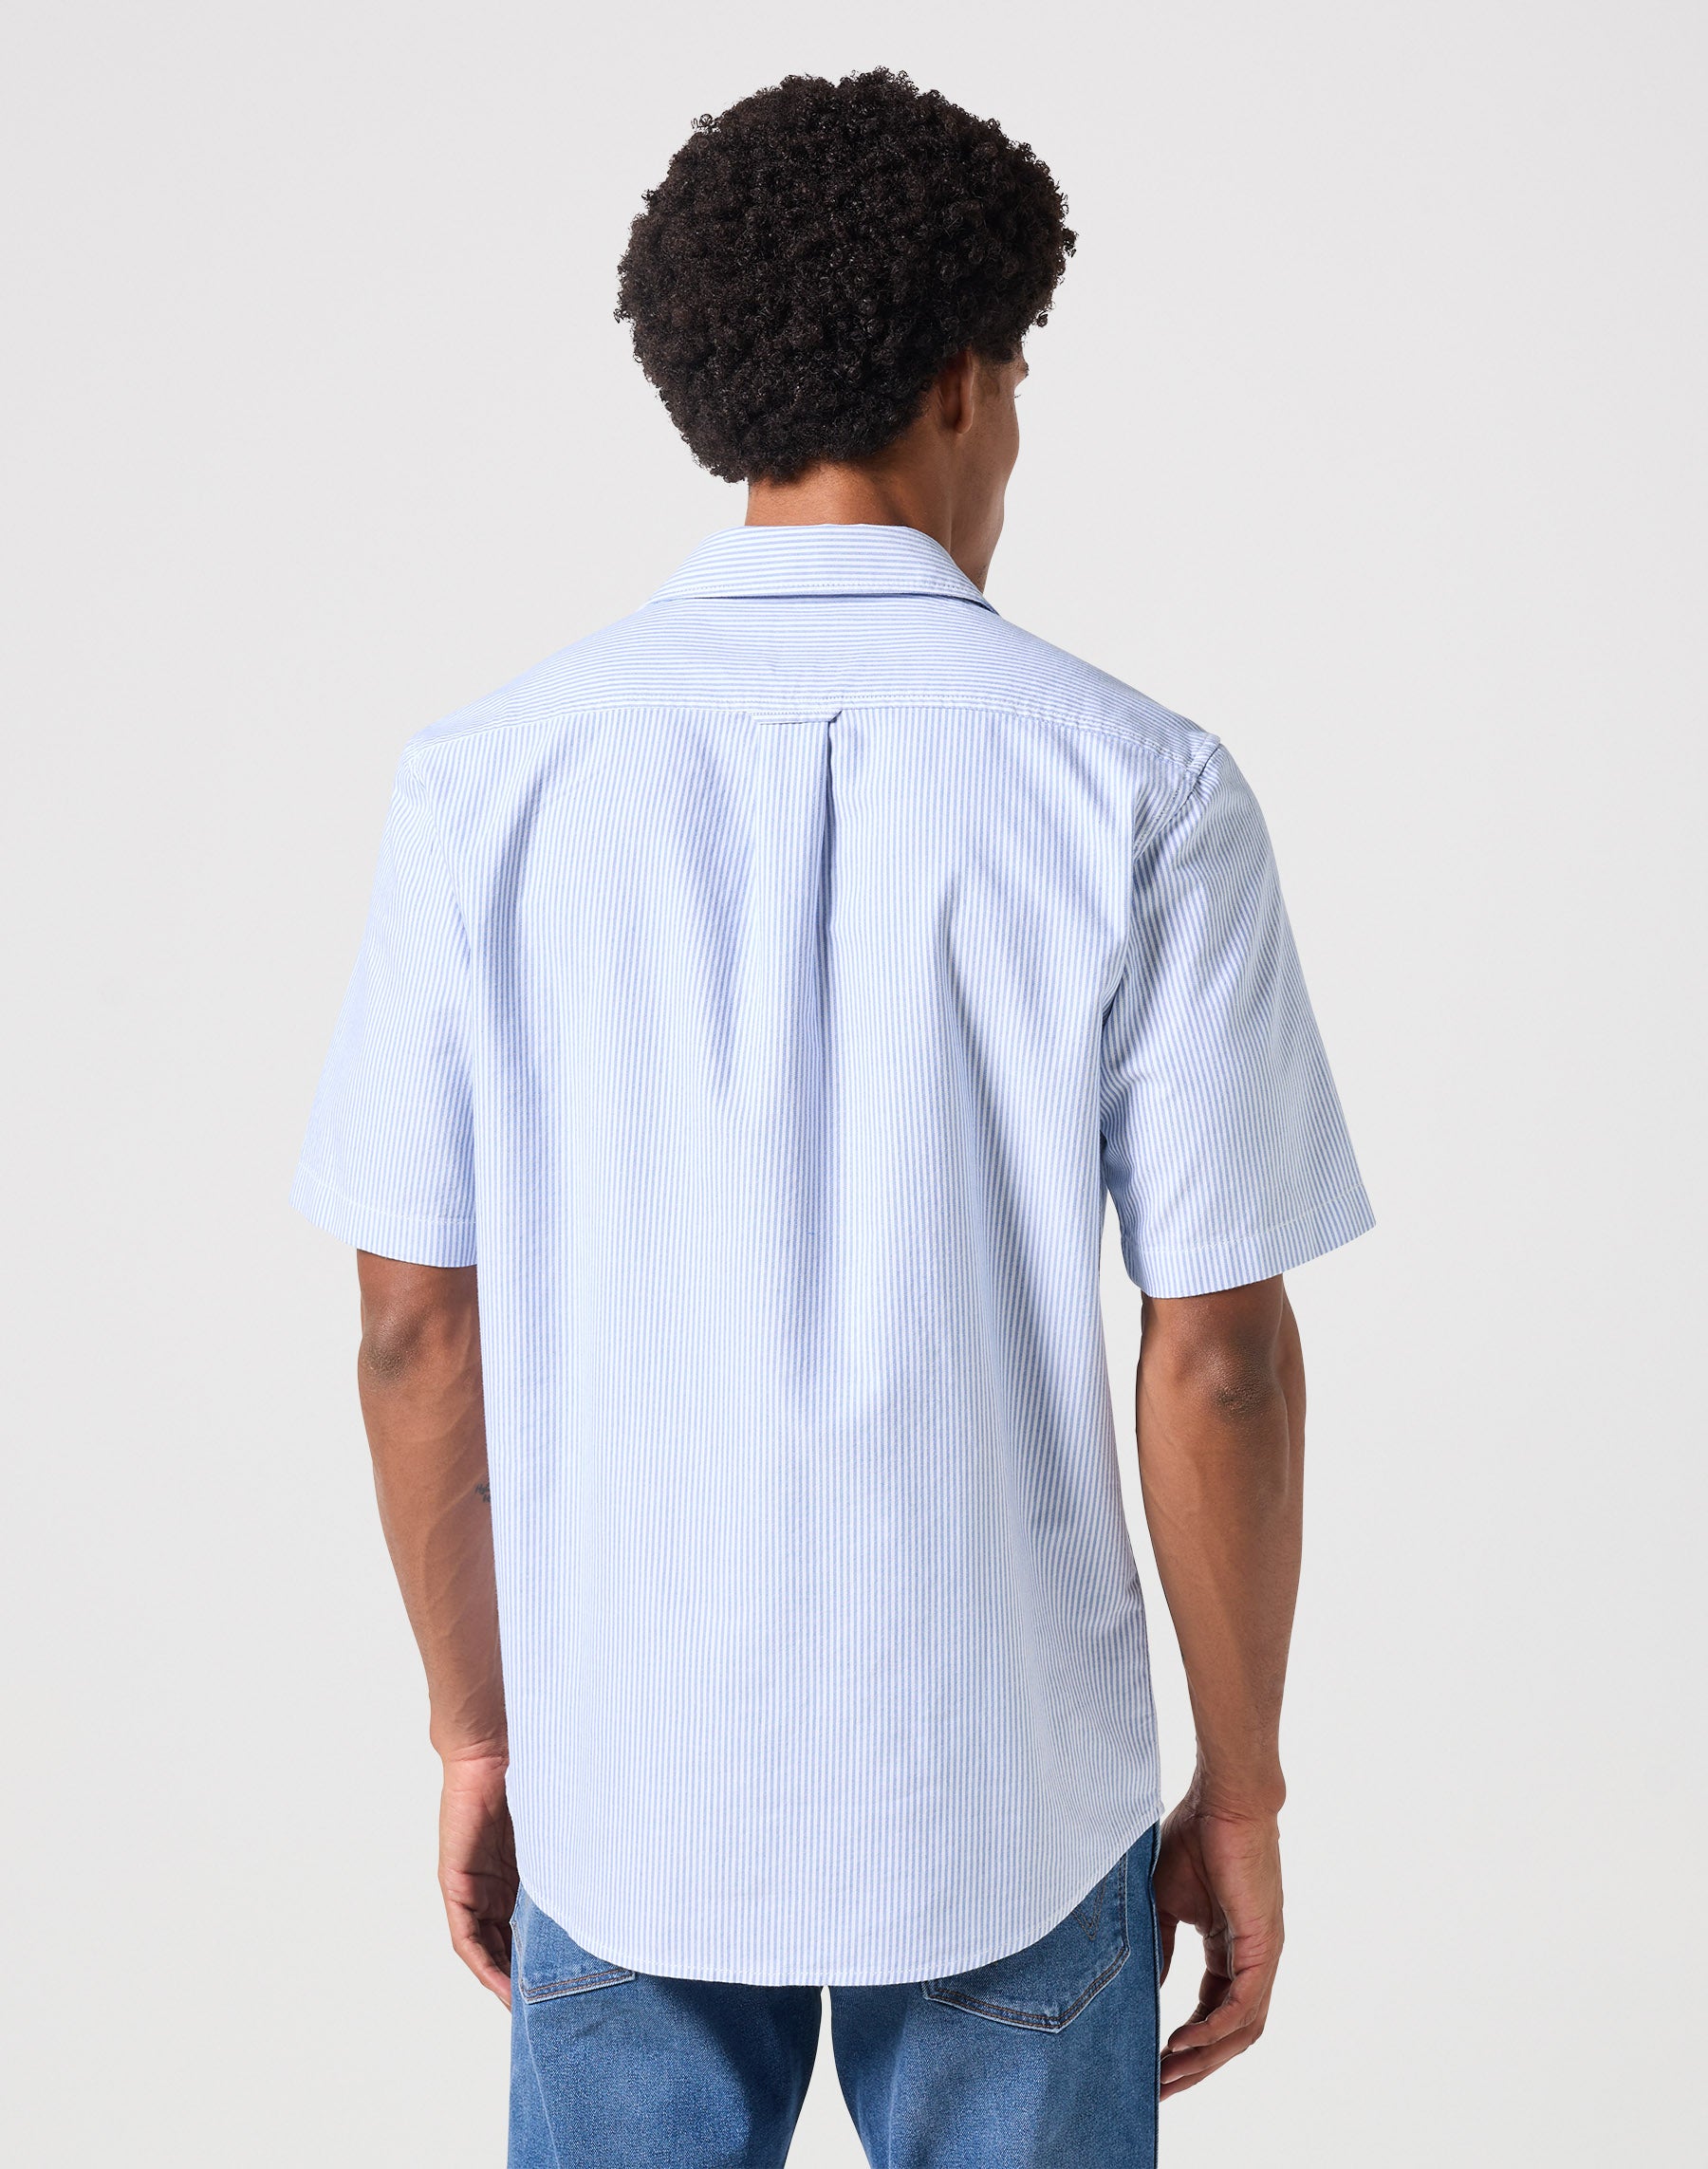 Short Sleeves Shirt in Blue Stripe Oxford Hemden Wrangler   